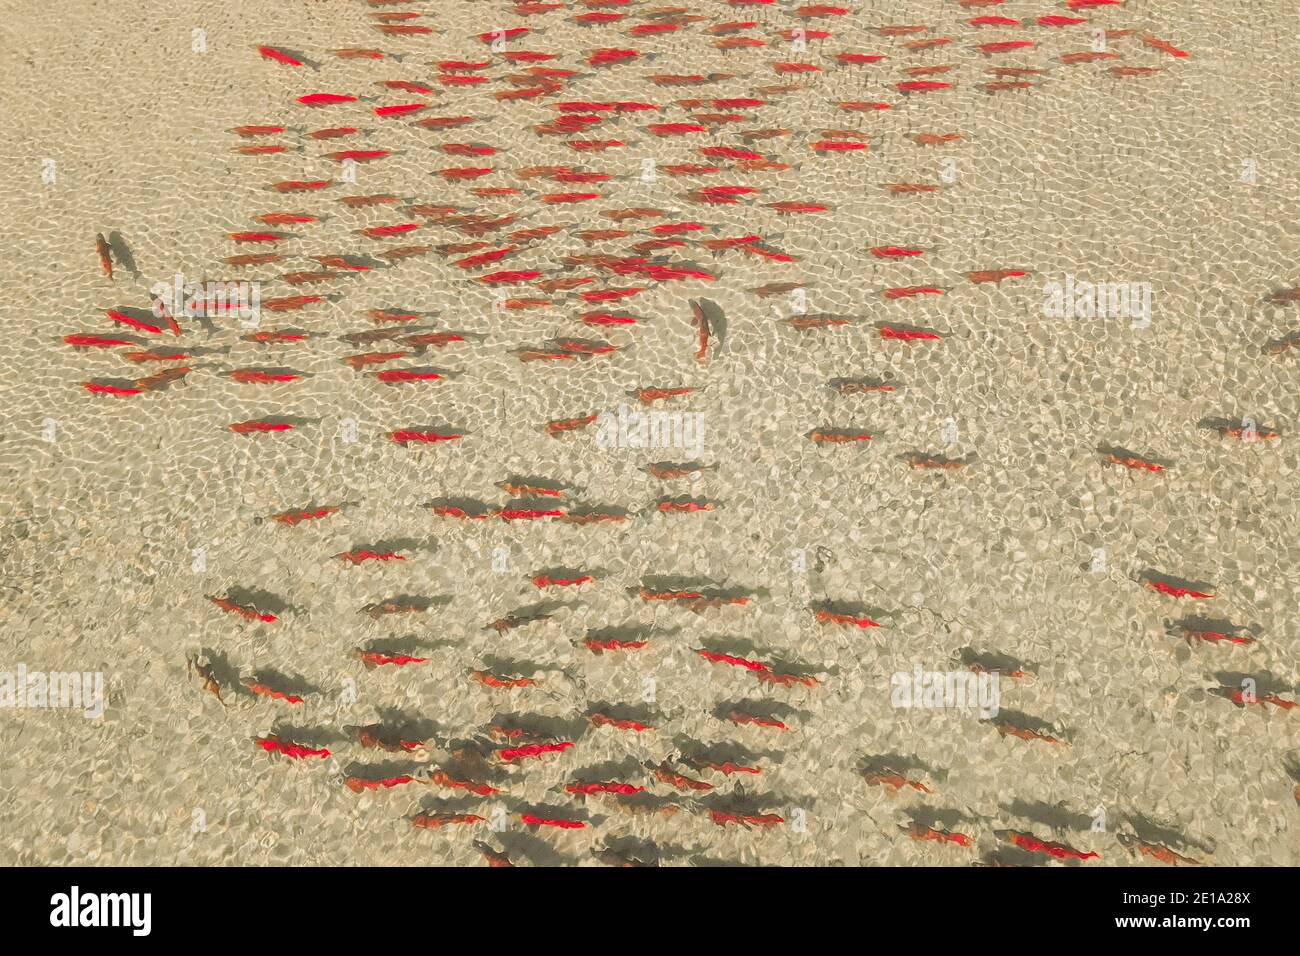 Une école de saumon sockeye aux couleurs de frai complètes nageant dans un bar de sable de la vallée du Fraser. Banque D'Images